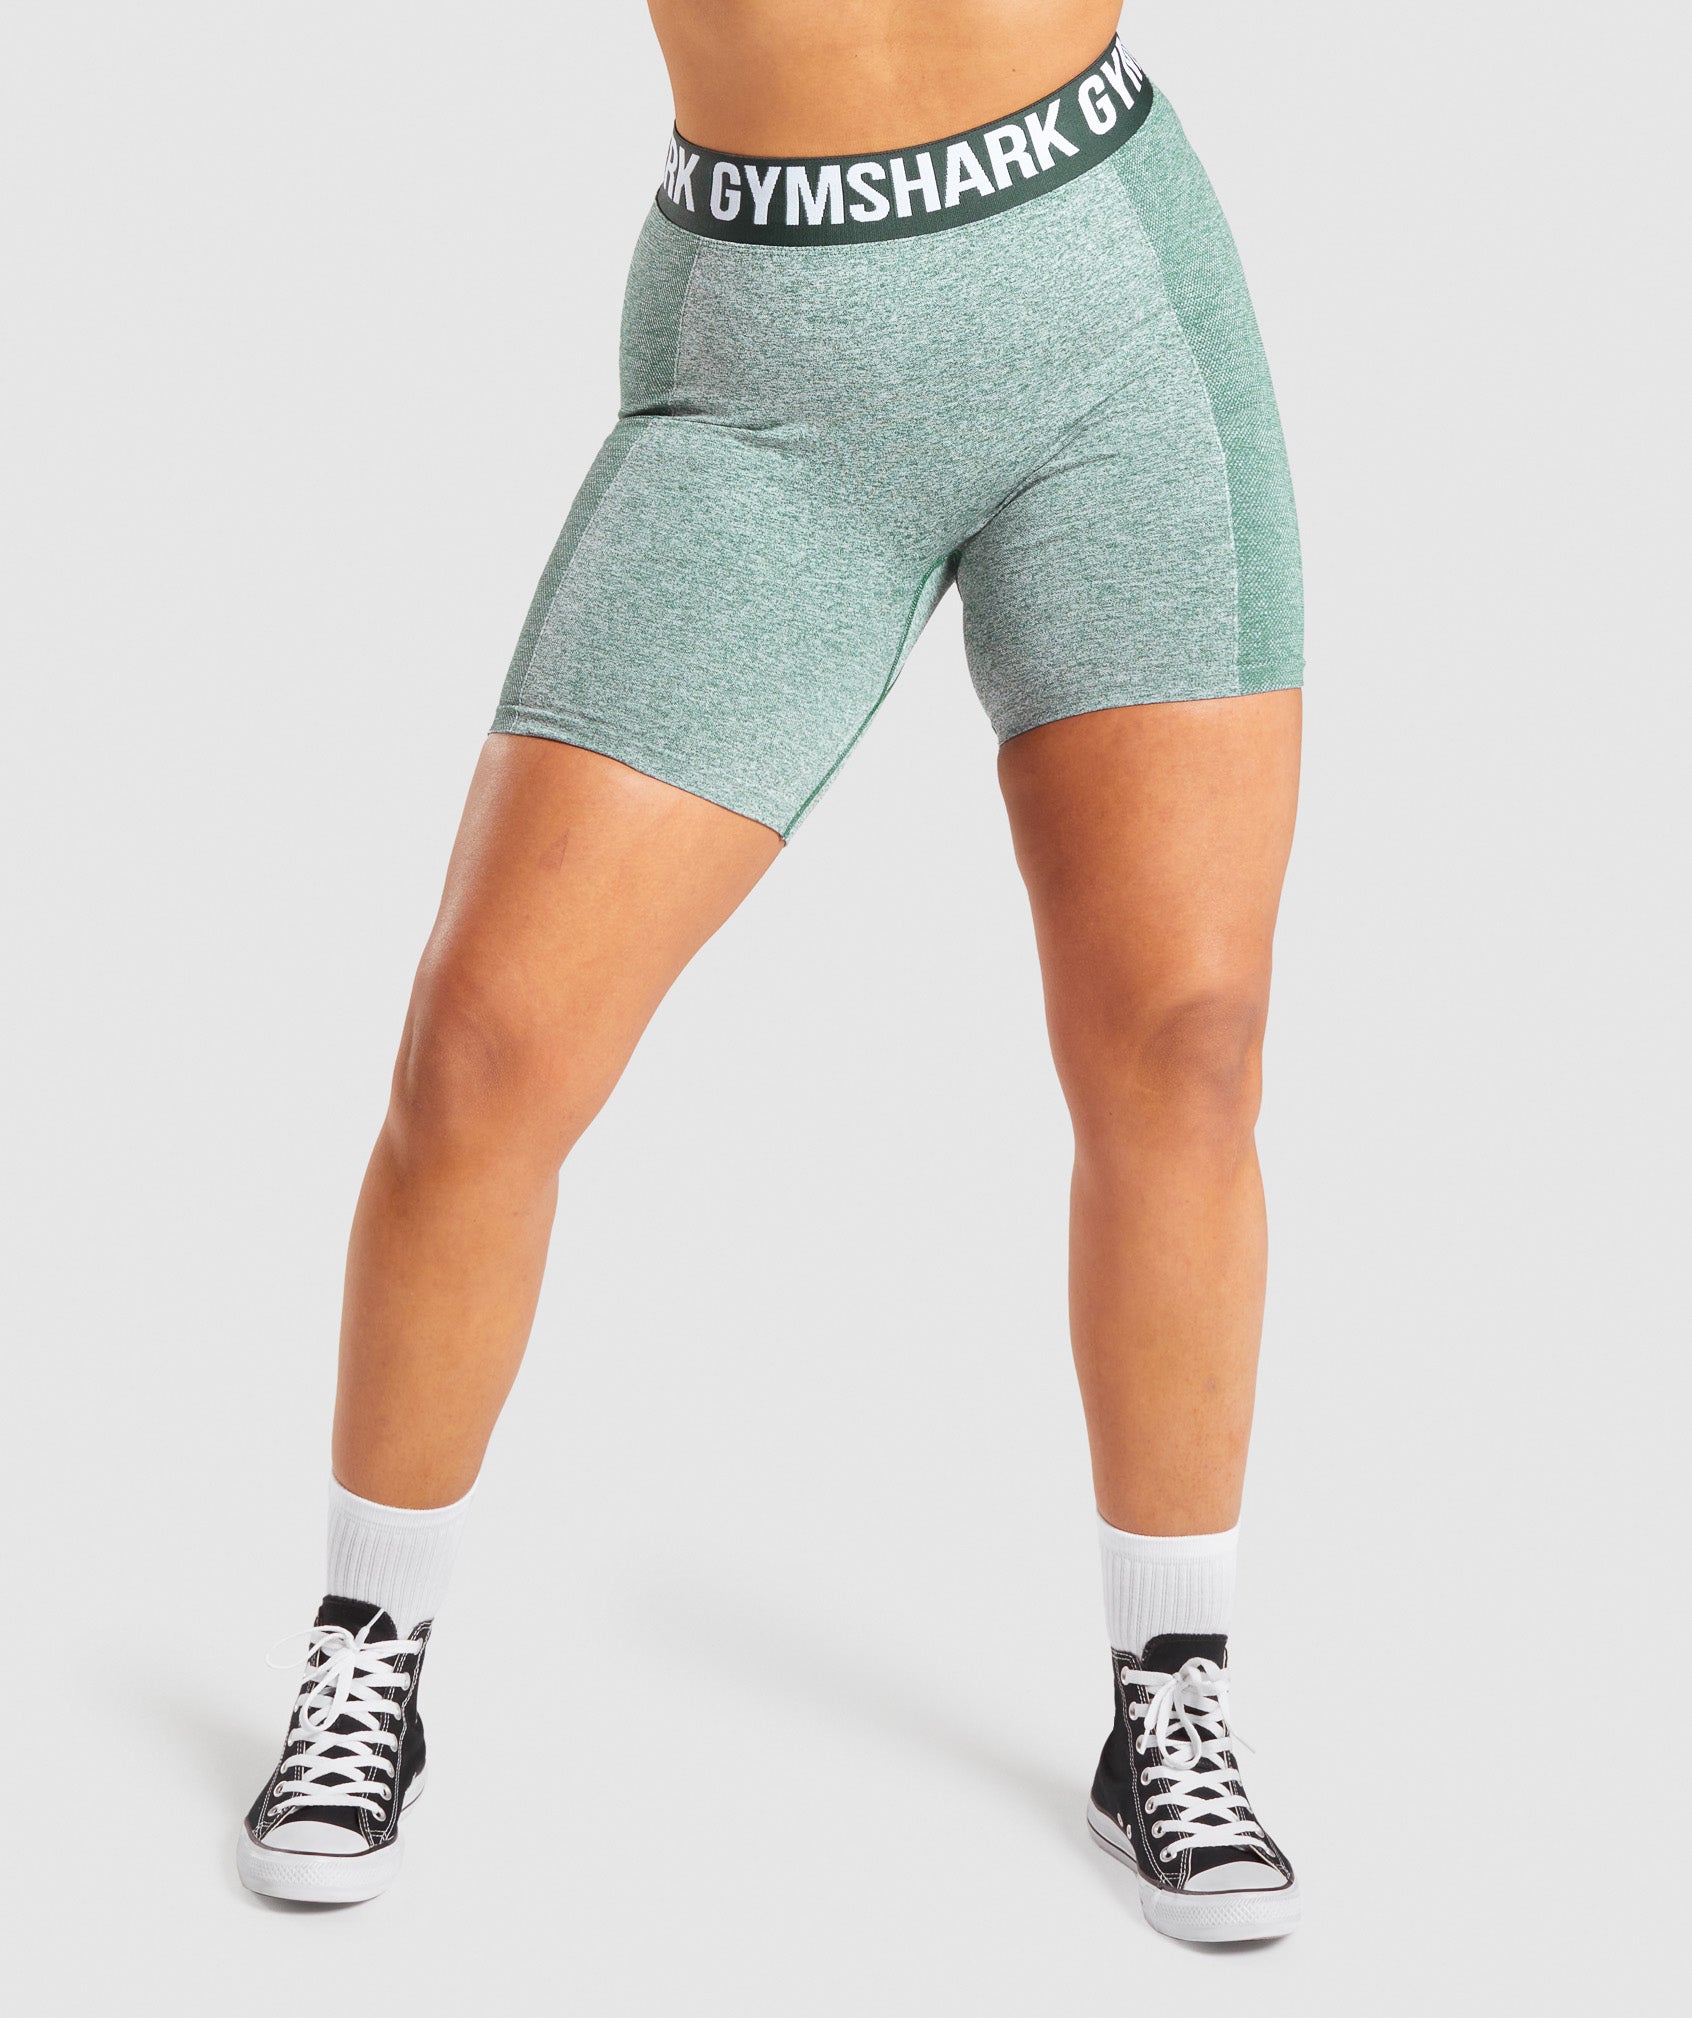 Gymshark Vital Seamless 2.0 Leggings - Bright Green Marl